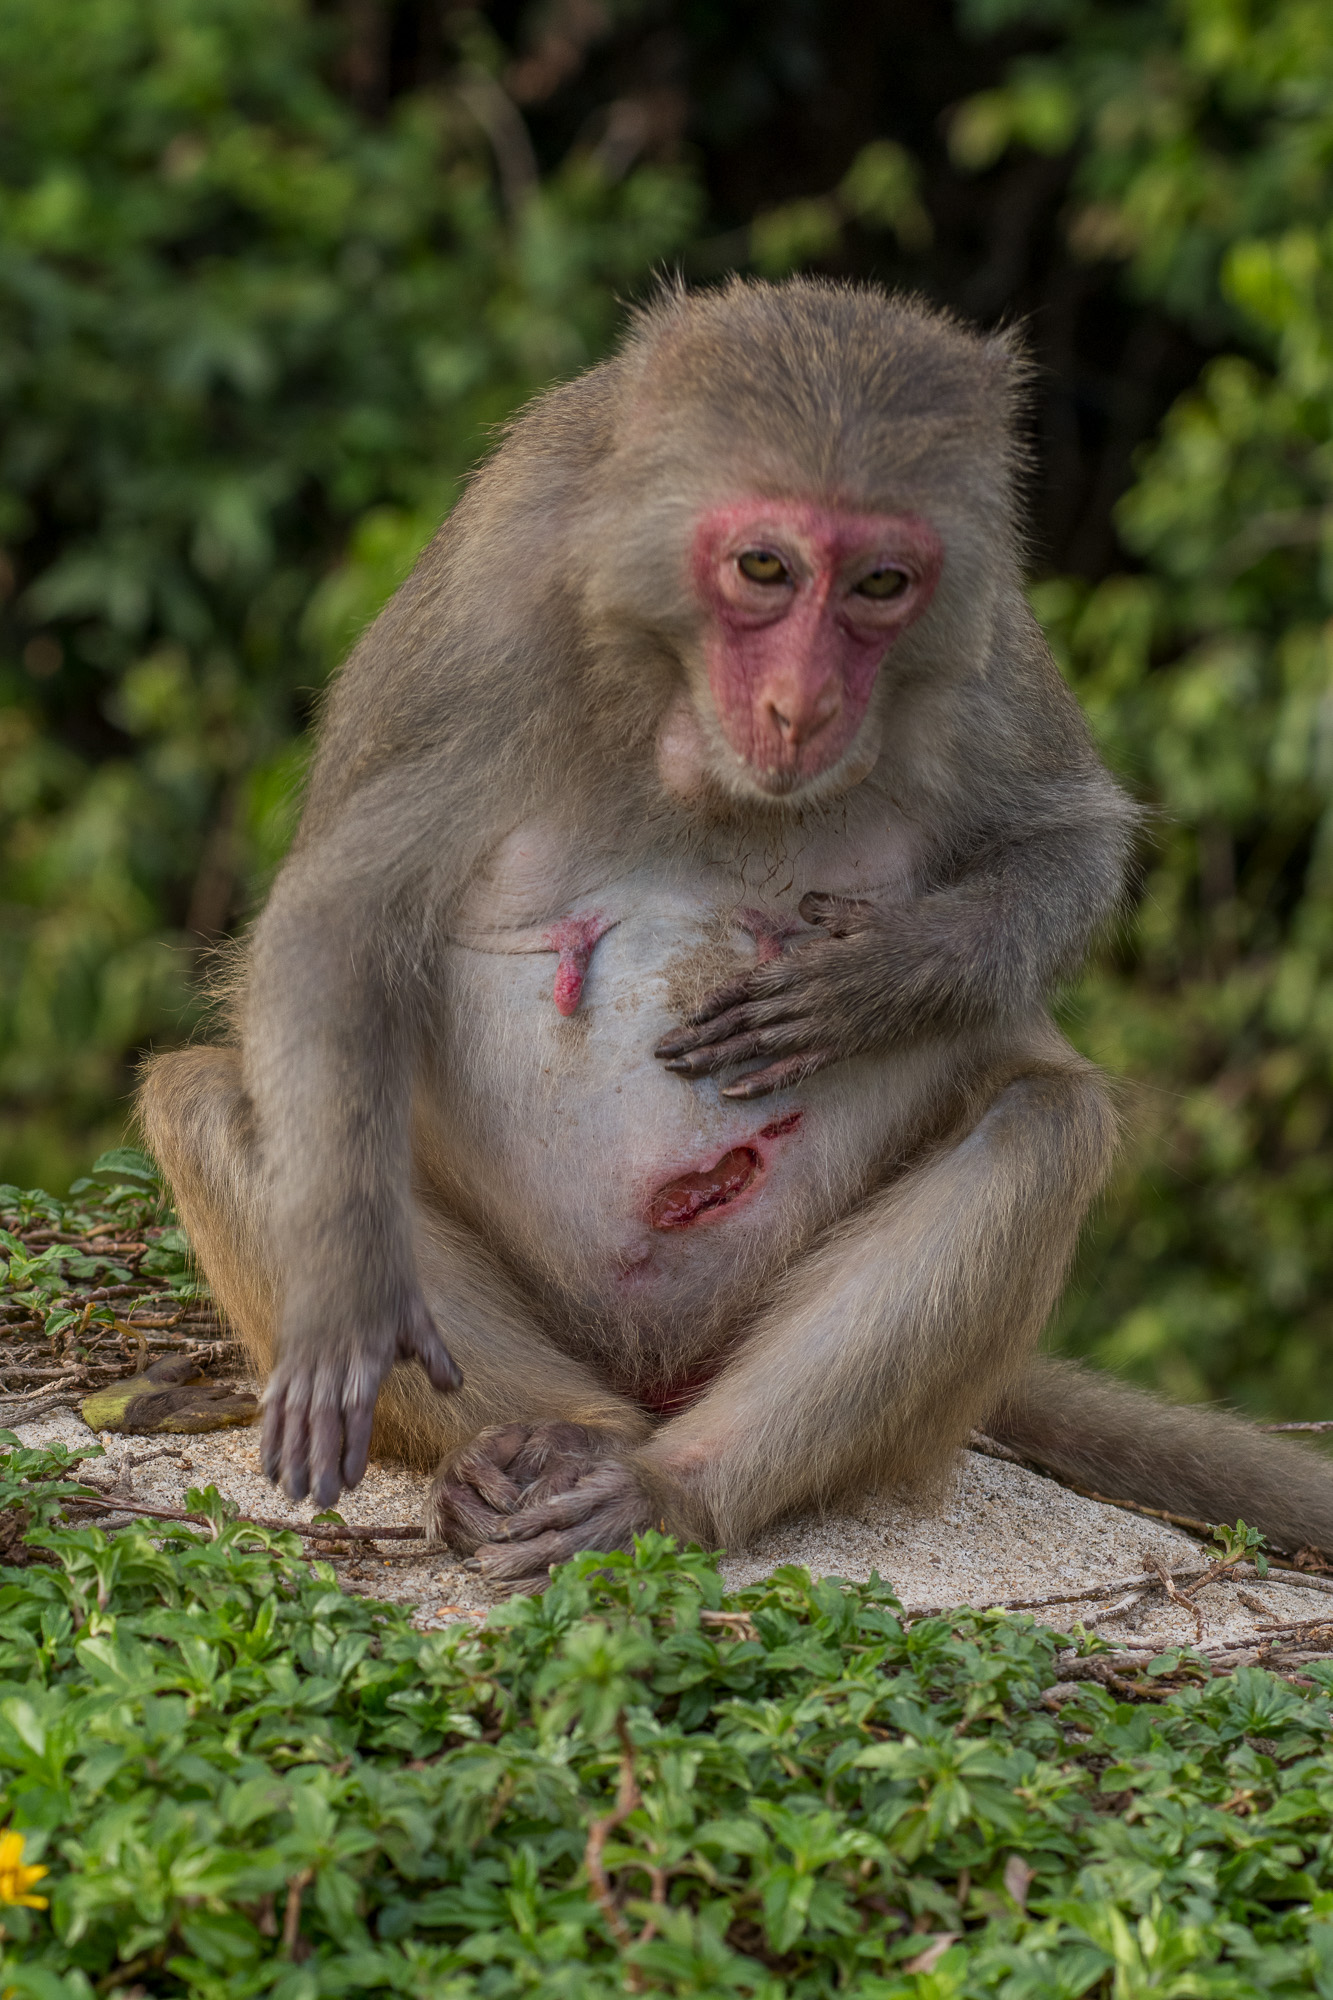 Hình ảnh khỉ con thương tích xúc động sẽ khiến bạn cảm động và suy nghĩ sâu sắc về cuộc sống cũng như giá trị của sự sống. Chúng ta nên trân trọng từng khoảnh khắc và điều đó đúng nhất khi chúng ta đã chứng kiến được hình ảnh đầy cảm xúc này.